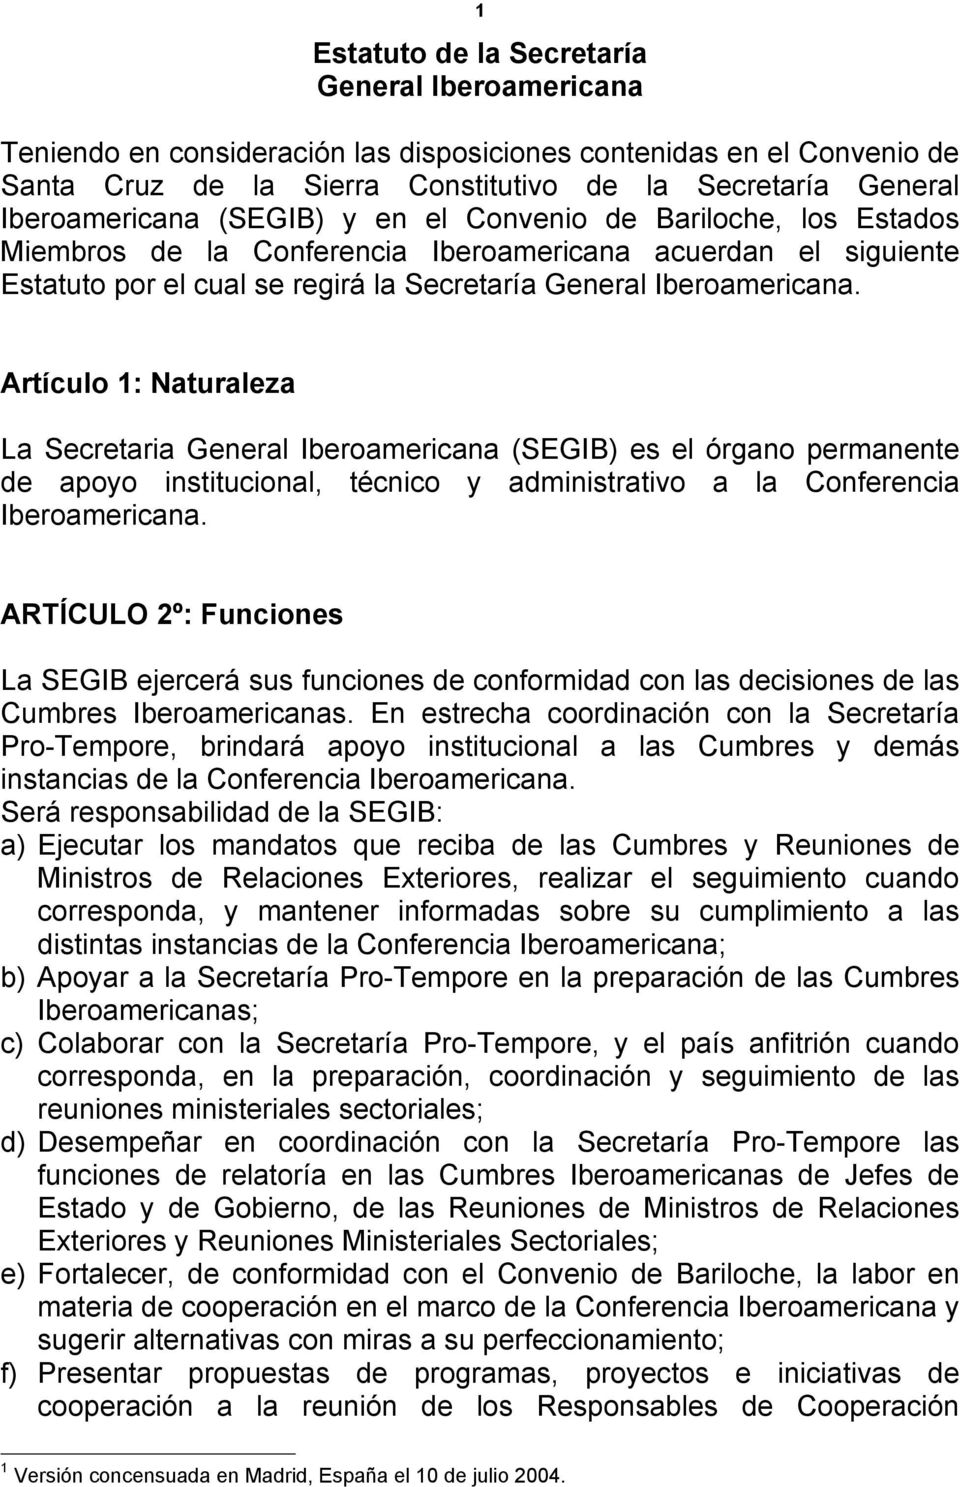 Artículo 1: Naturaleza La Secretaria General Iberoamericana (SEGIB) es el órgano permanente de apoyo institucional, técnico y administrativo a la Conferencia Iberoamericana.